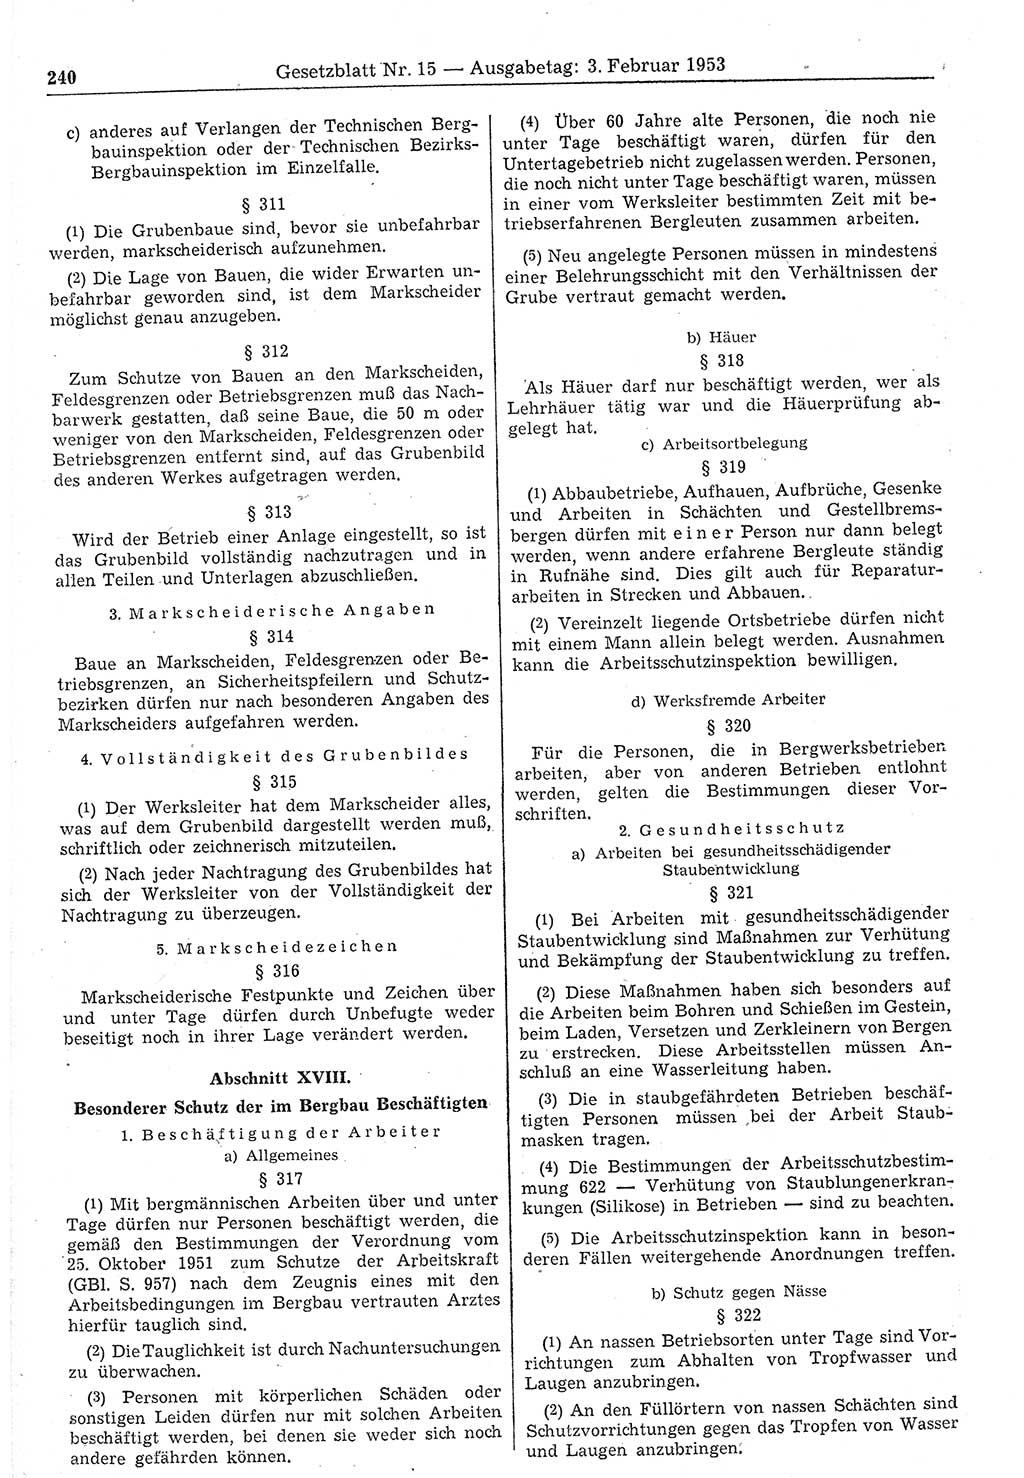 Gesetzblatt (GBl.) der Deutschen Demokratischen Republik (DDR) 1953, Seite 240 (GBl. DDR 1953, S. 240)